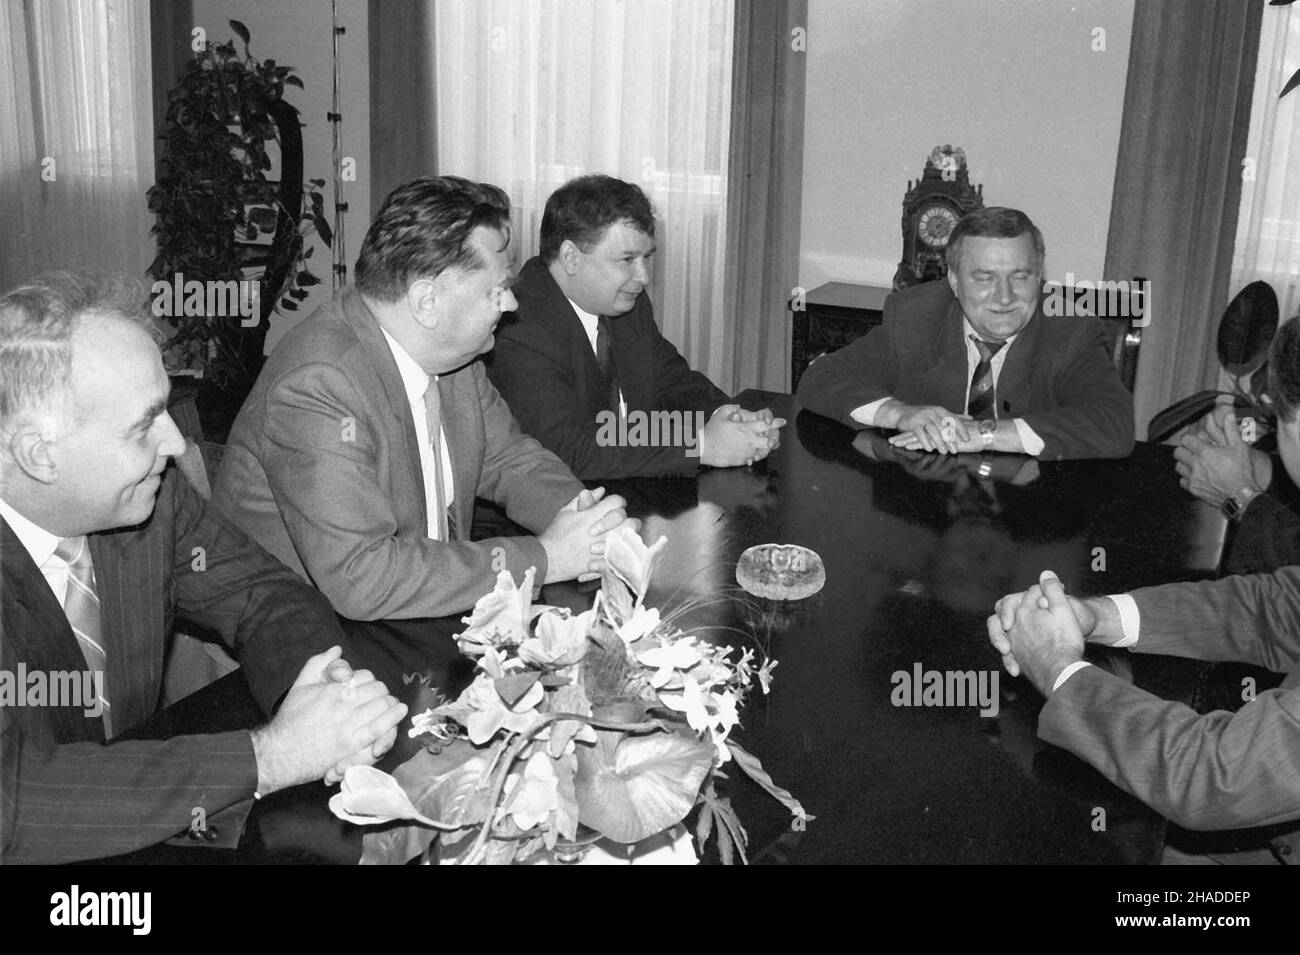 Warszawa, 23.09.1991. Prezydent Lech Wa³êsa spotka³ siê z przedstawicielami koalicji Porozumienia Centrum. Nz. m.in. Jan Olszewski (2L), Jaros³aw Kaczyñski (3L) i Lech Wa³êsa (P). (kru) PAP/Janusz Mazur     Warsaw, 23.09.1991. Polish President Lech Walesa met with representatives of the Centre Agreement (PC) party, in Warsaw. Pictured: Jan Olszewski (2L), Jaroslaw Kaczynski (3L) and Lech Walesa (R). (kru) PAP/Janusz Mazur Stock Photo